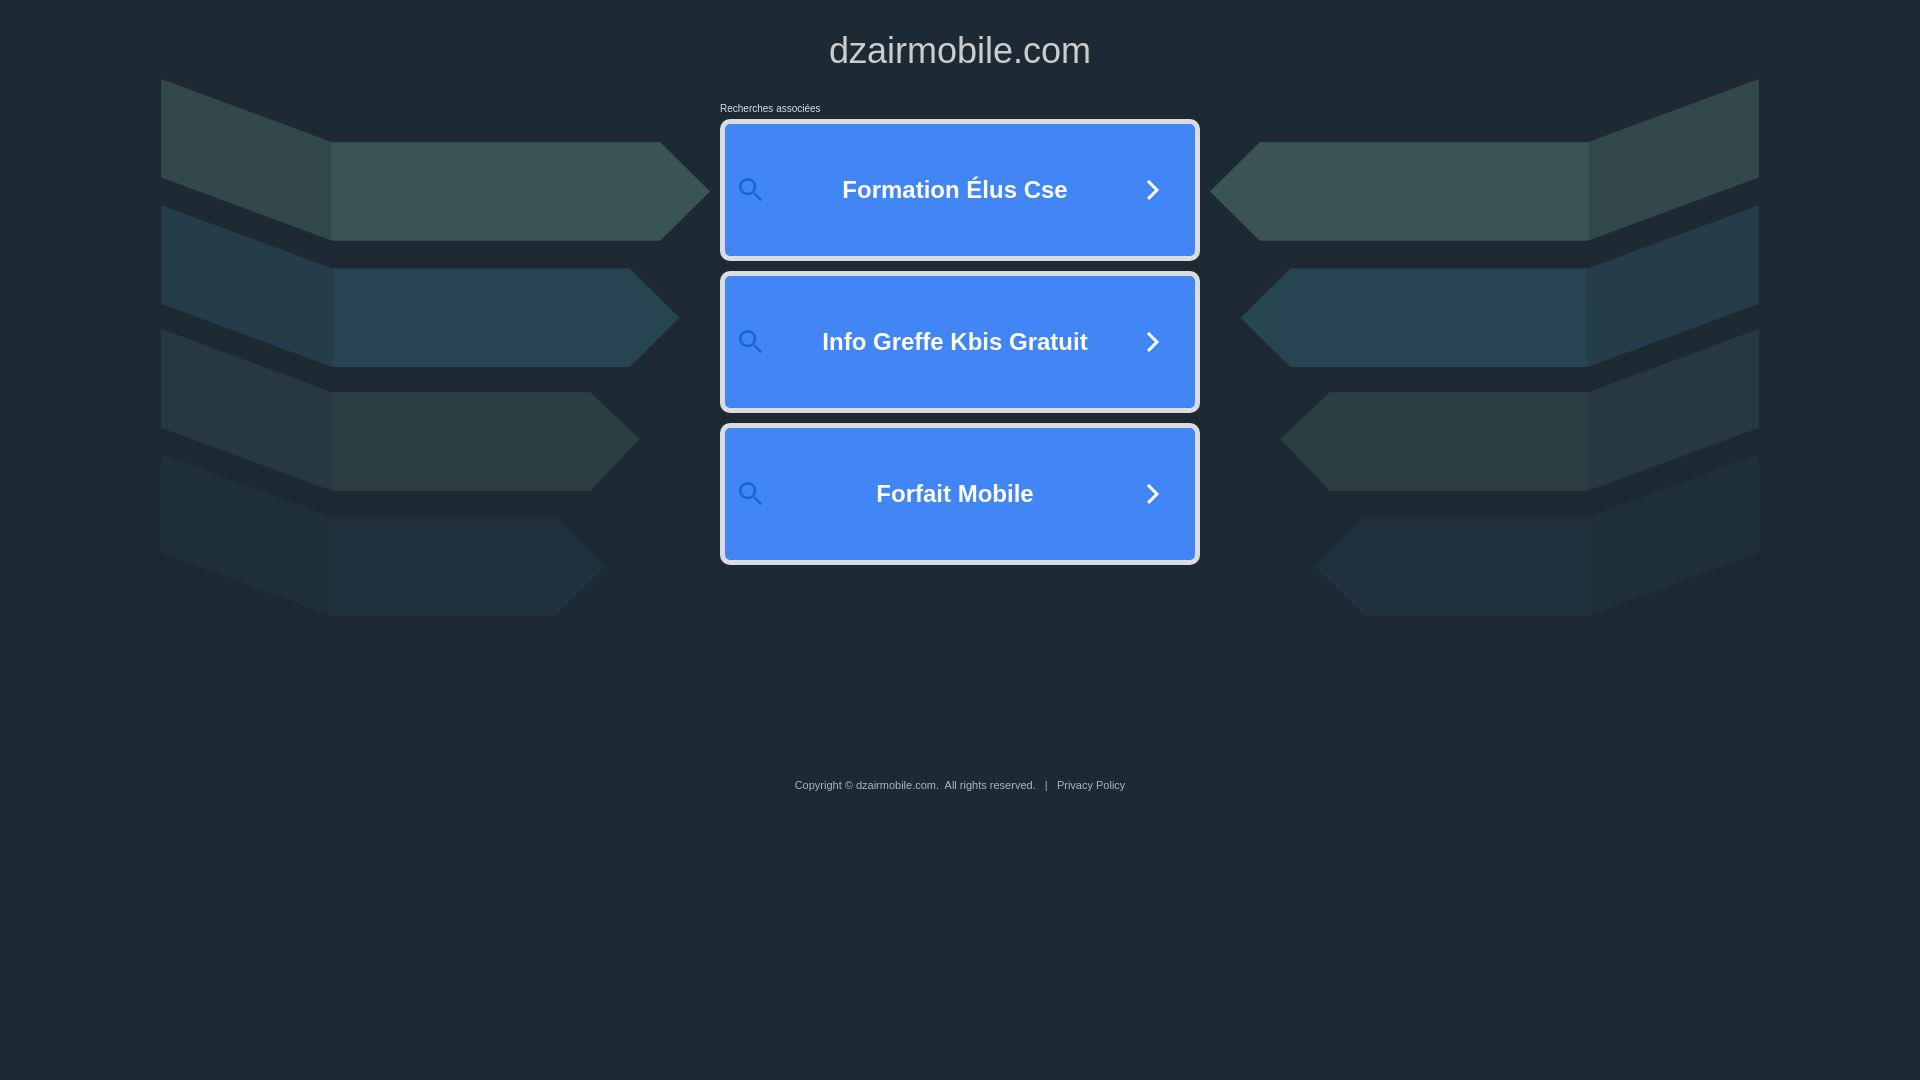 网站状态 dzairmobile.com 是  在线的